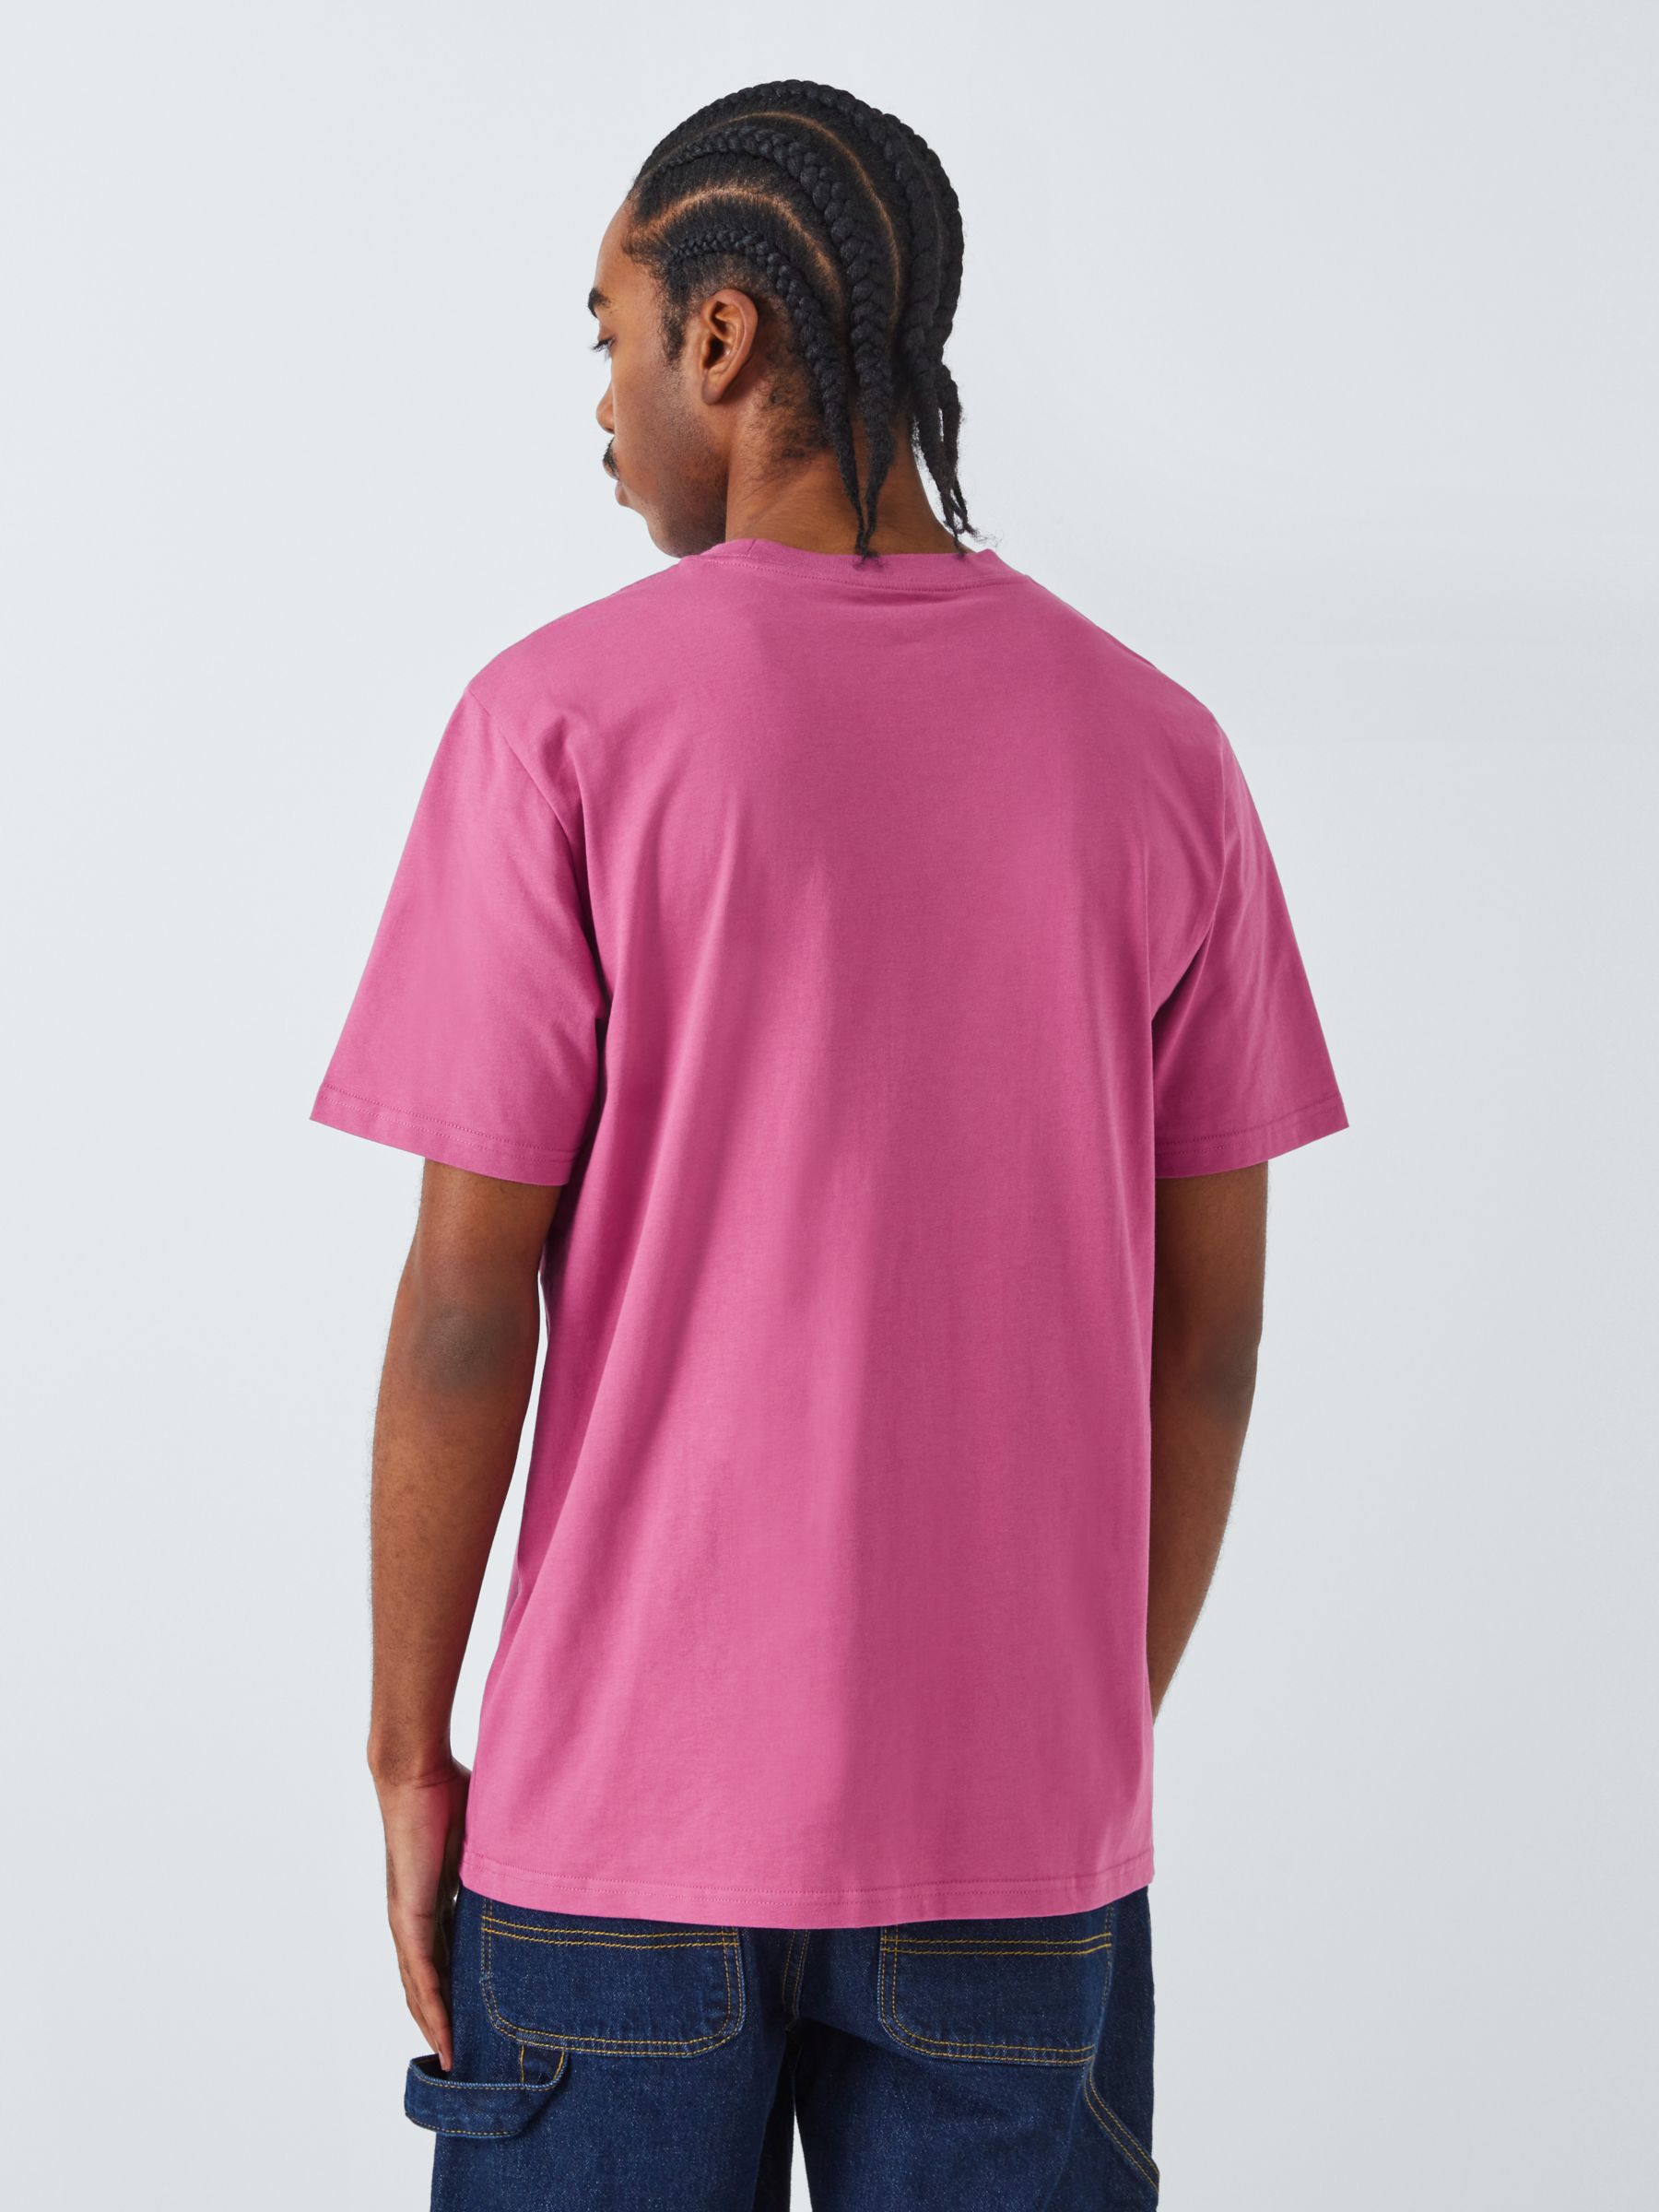 Carhartt WIP Short Sleeve Script T-Shirt, Magenta/Black, S